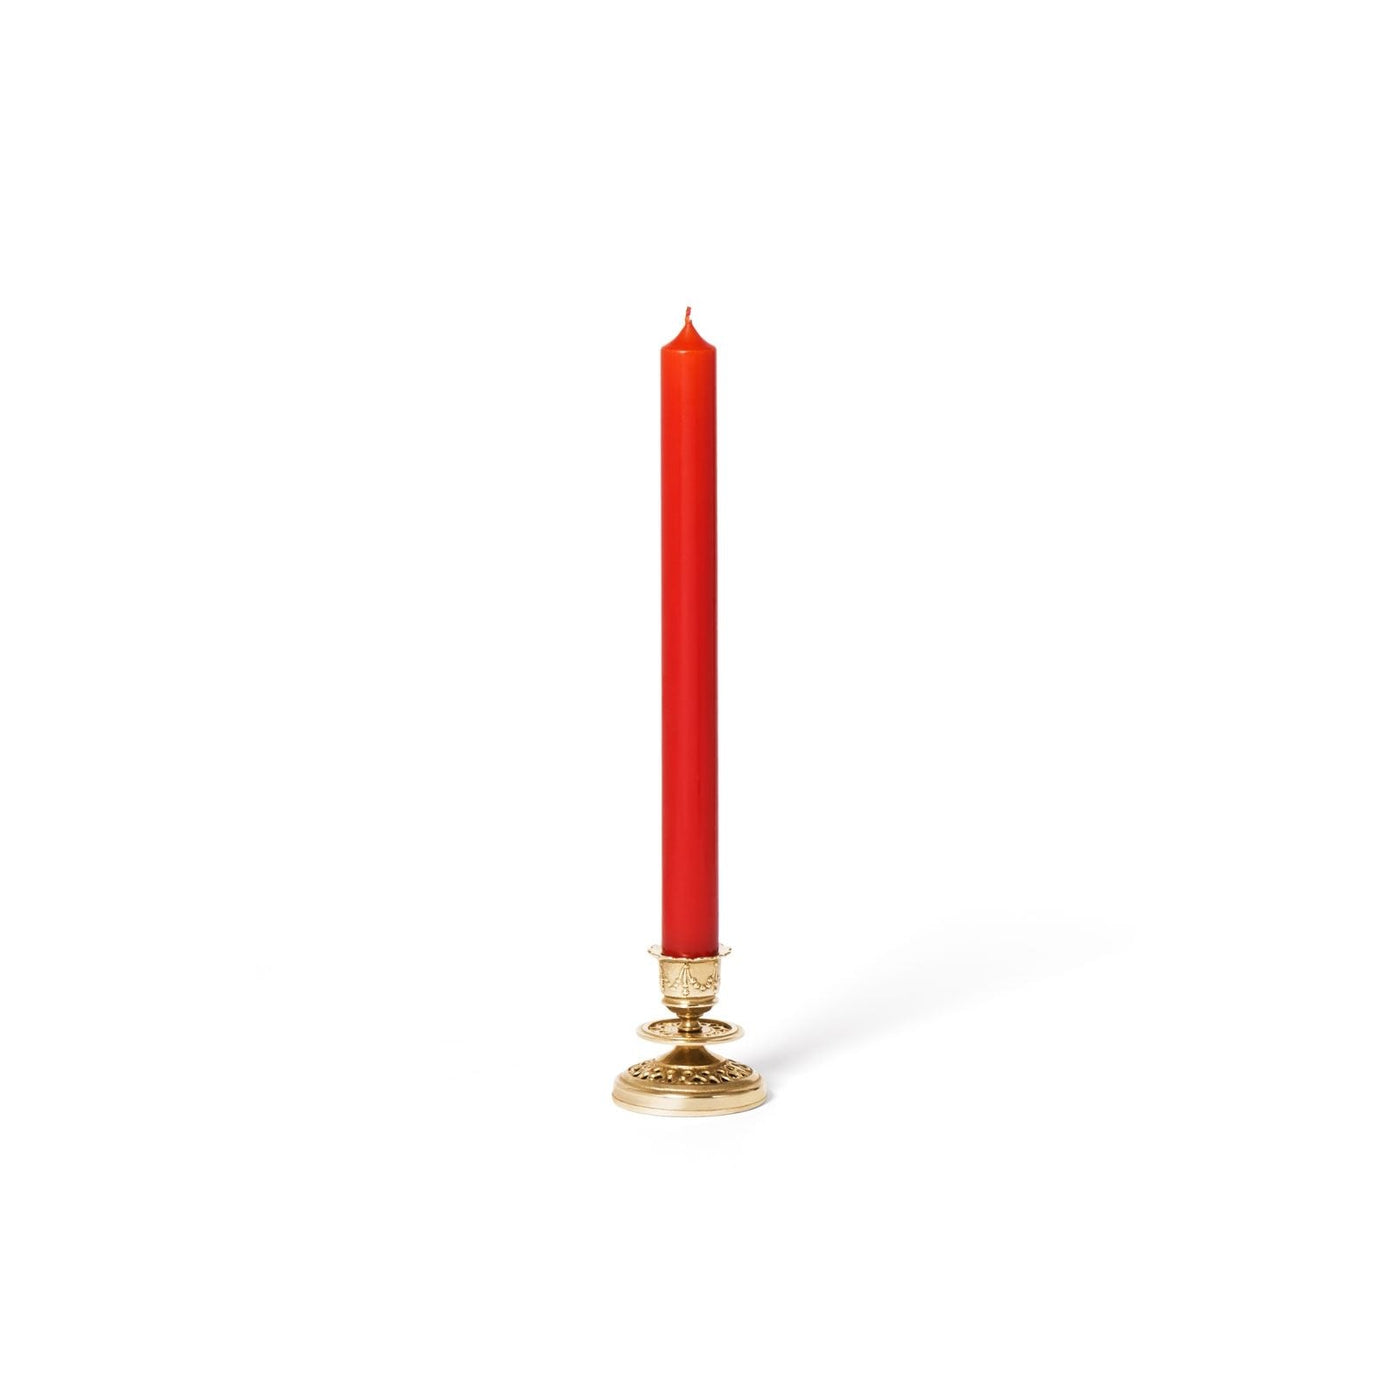 Chiselled Candlestick - Cire Trudon - Ileana Makri store